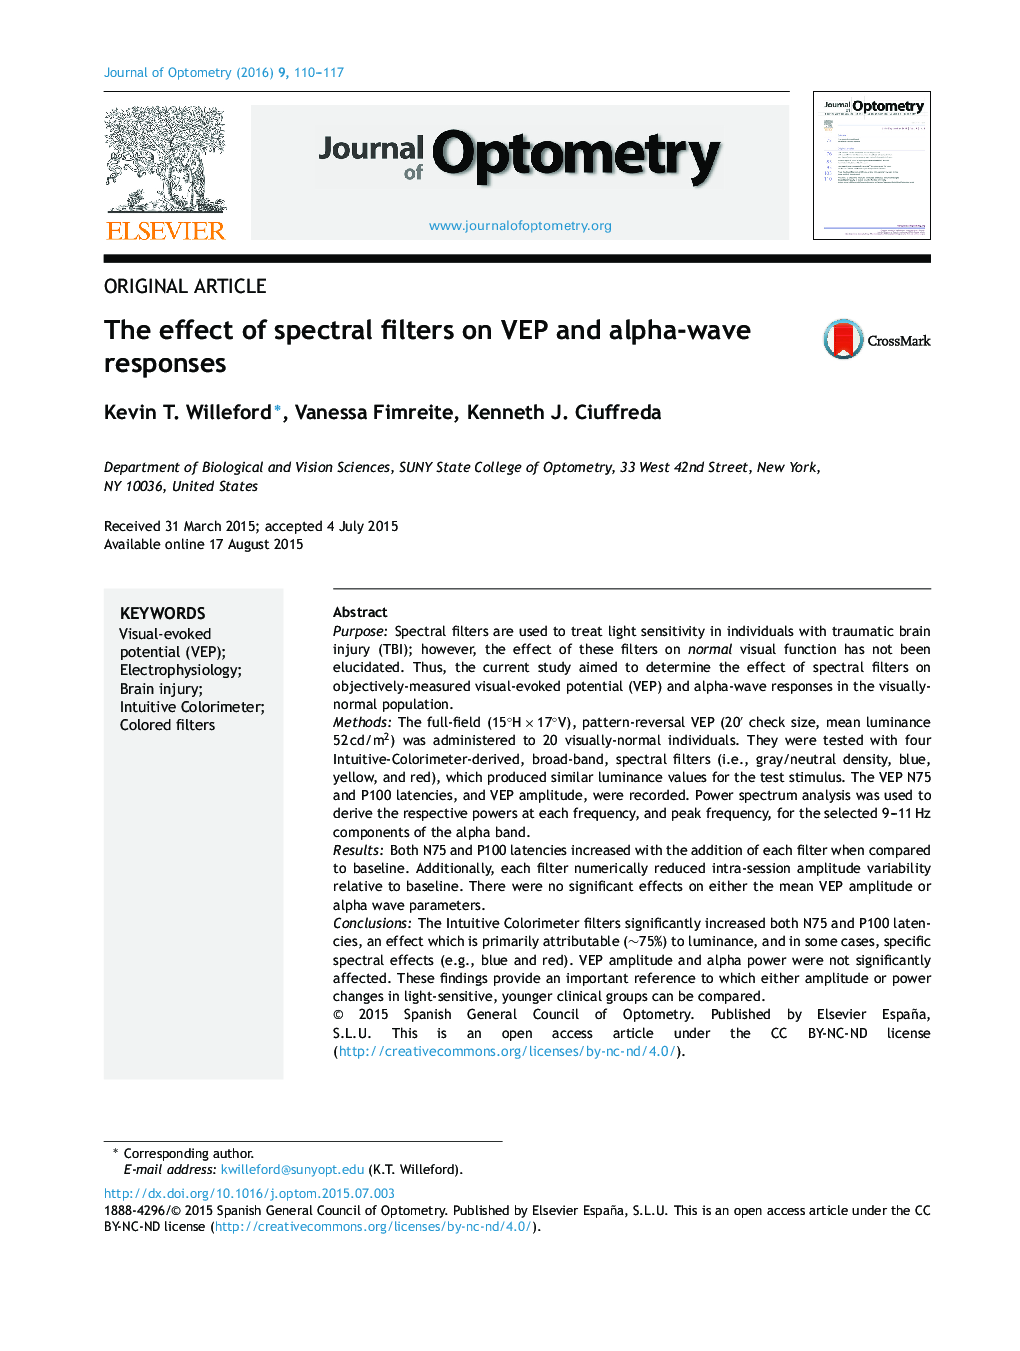 اثر فیلترهای طیفی بر VEP و واکنش‌های آلفا موج